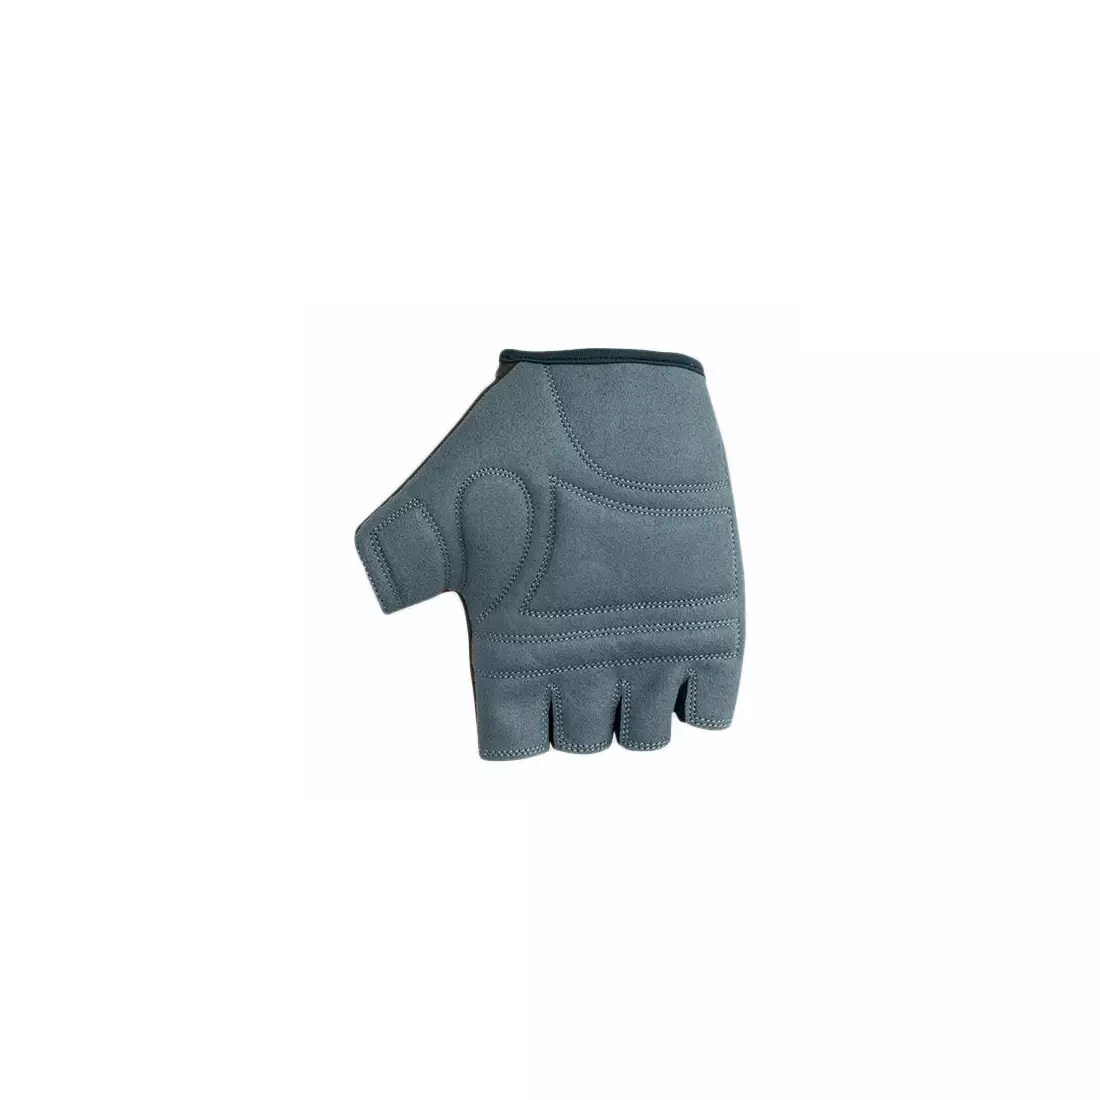 POLEDNIK Handschuhe F4 NEW15, Farbe: blau